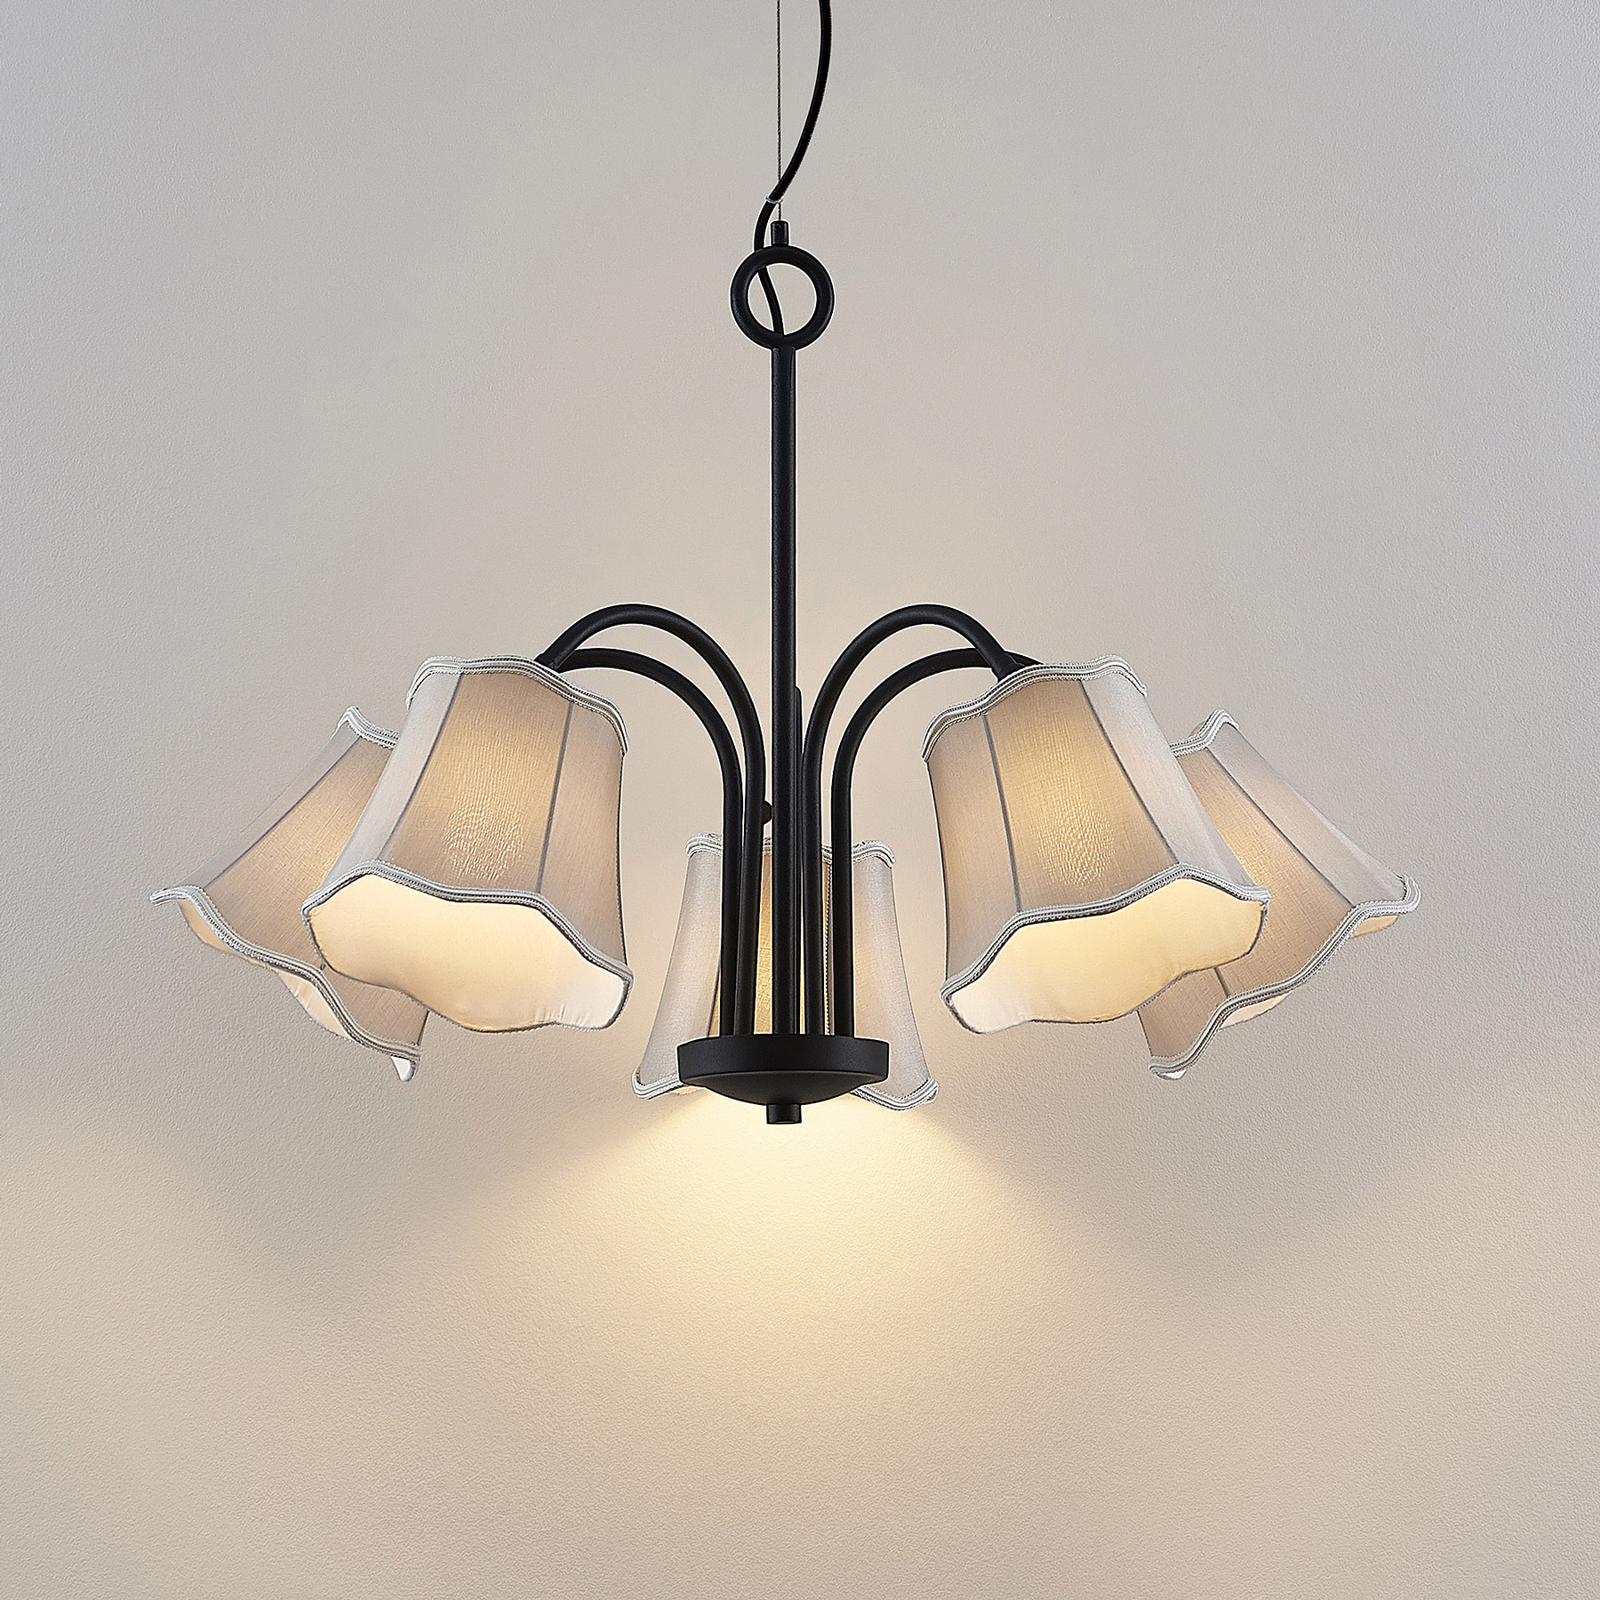 Lucande Binta hanglamp, 5-lamps, zilvergrijs